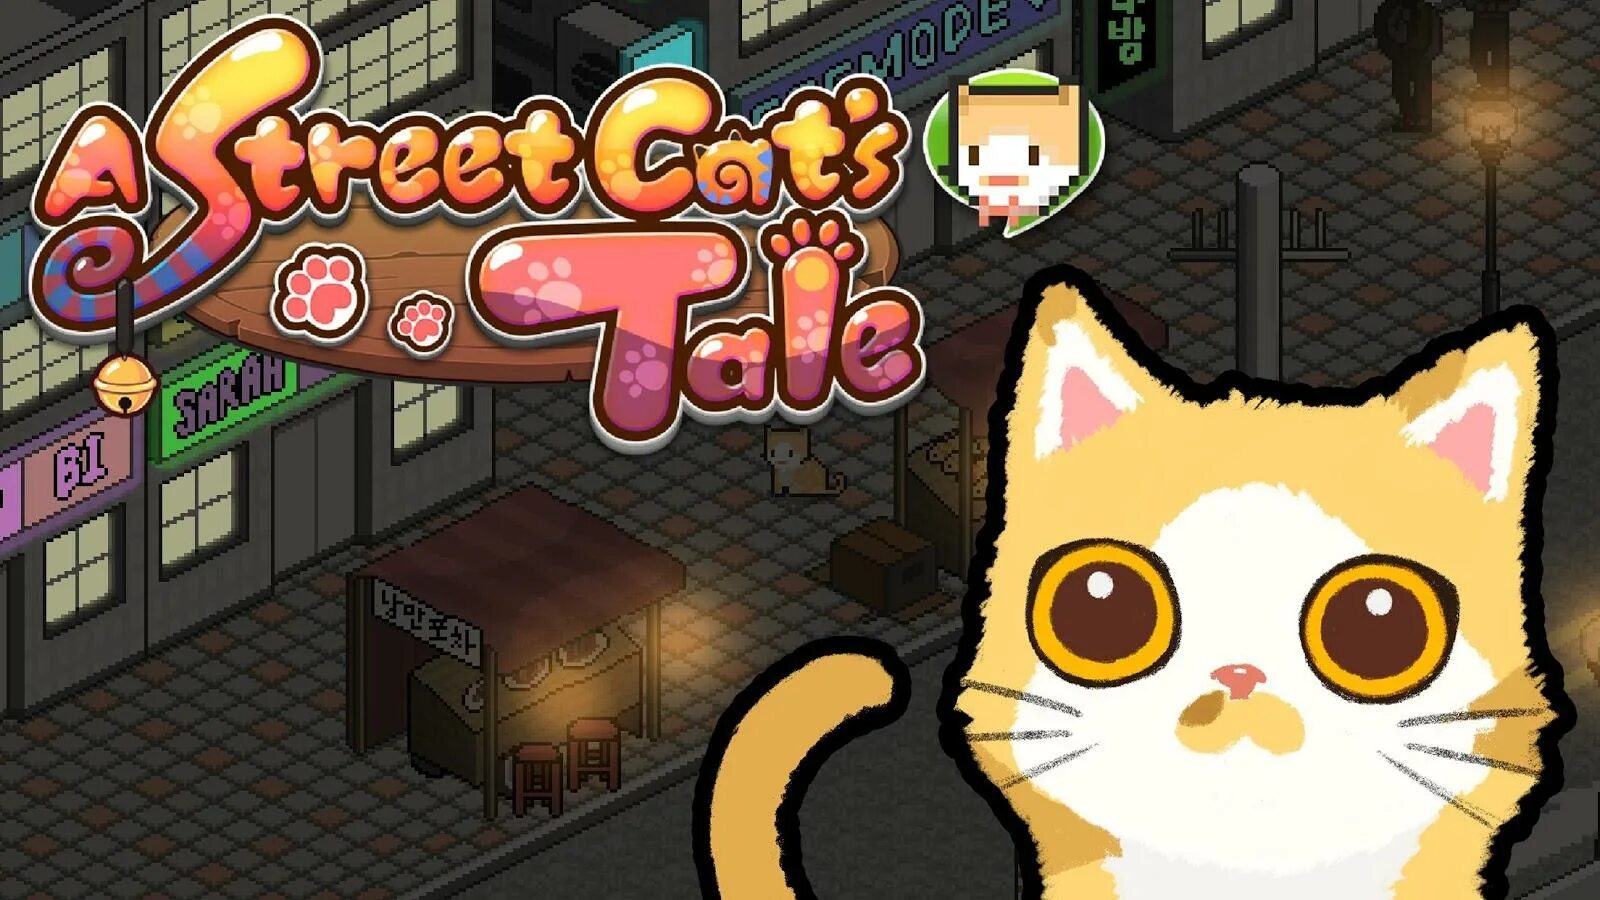 Hello street cat издевательство. Игра a Street Cat`s Tale. A Street Cat's Tale последняя версия. A Street Cat's Tale карта. Пиксельные котики игра.